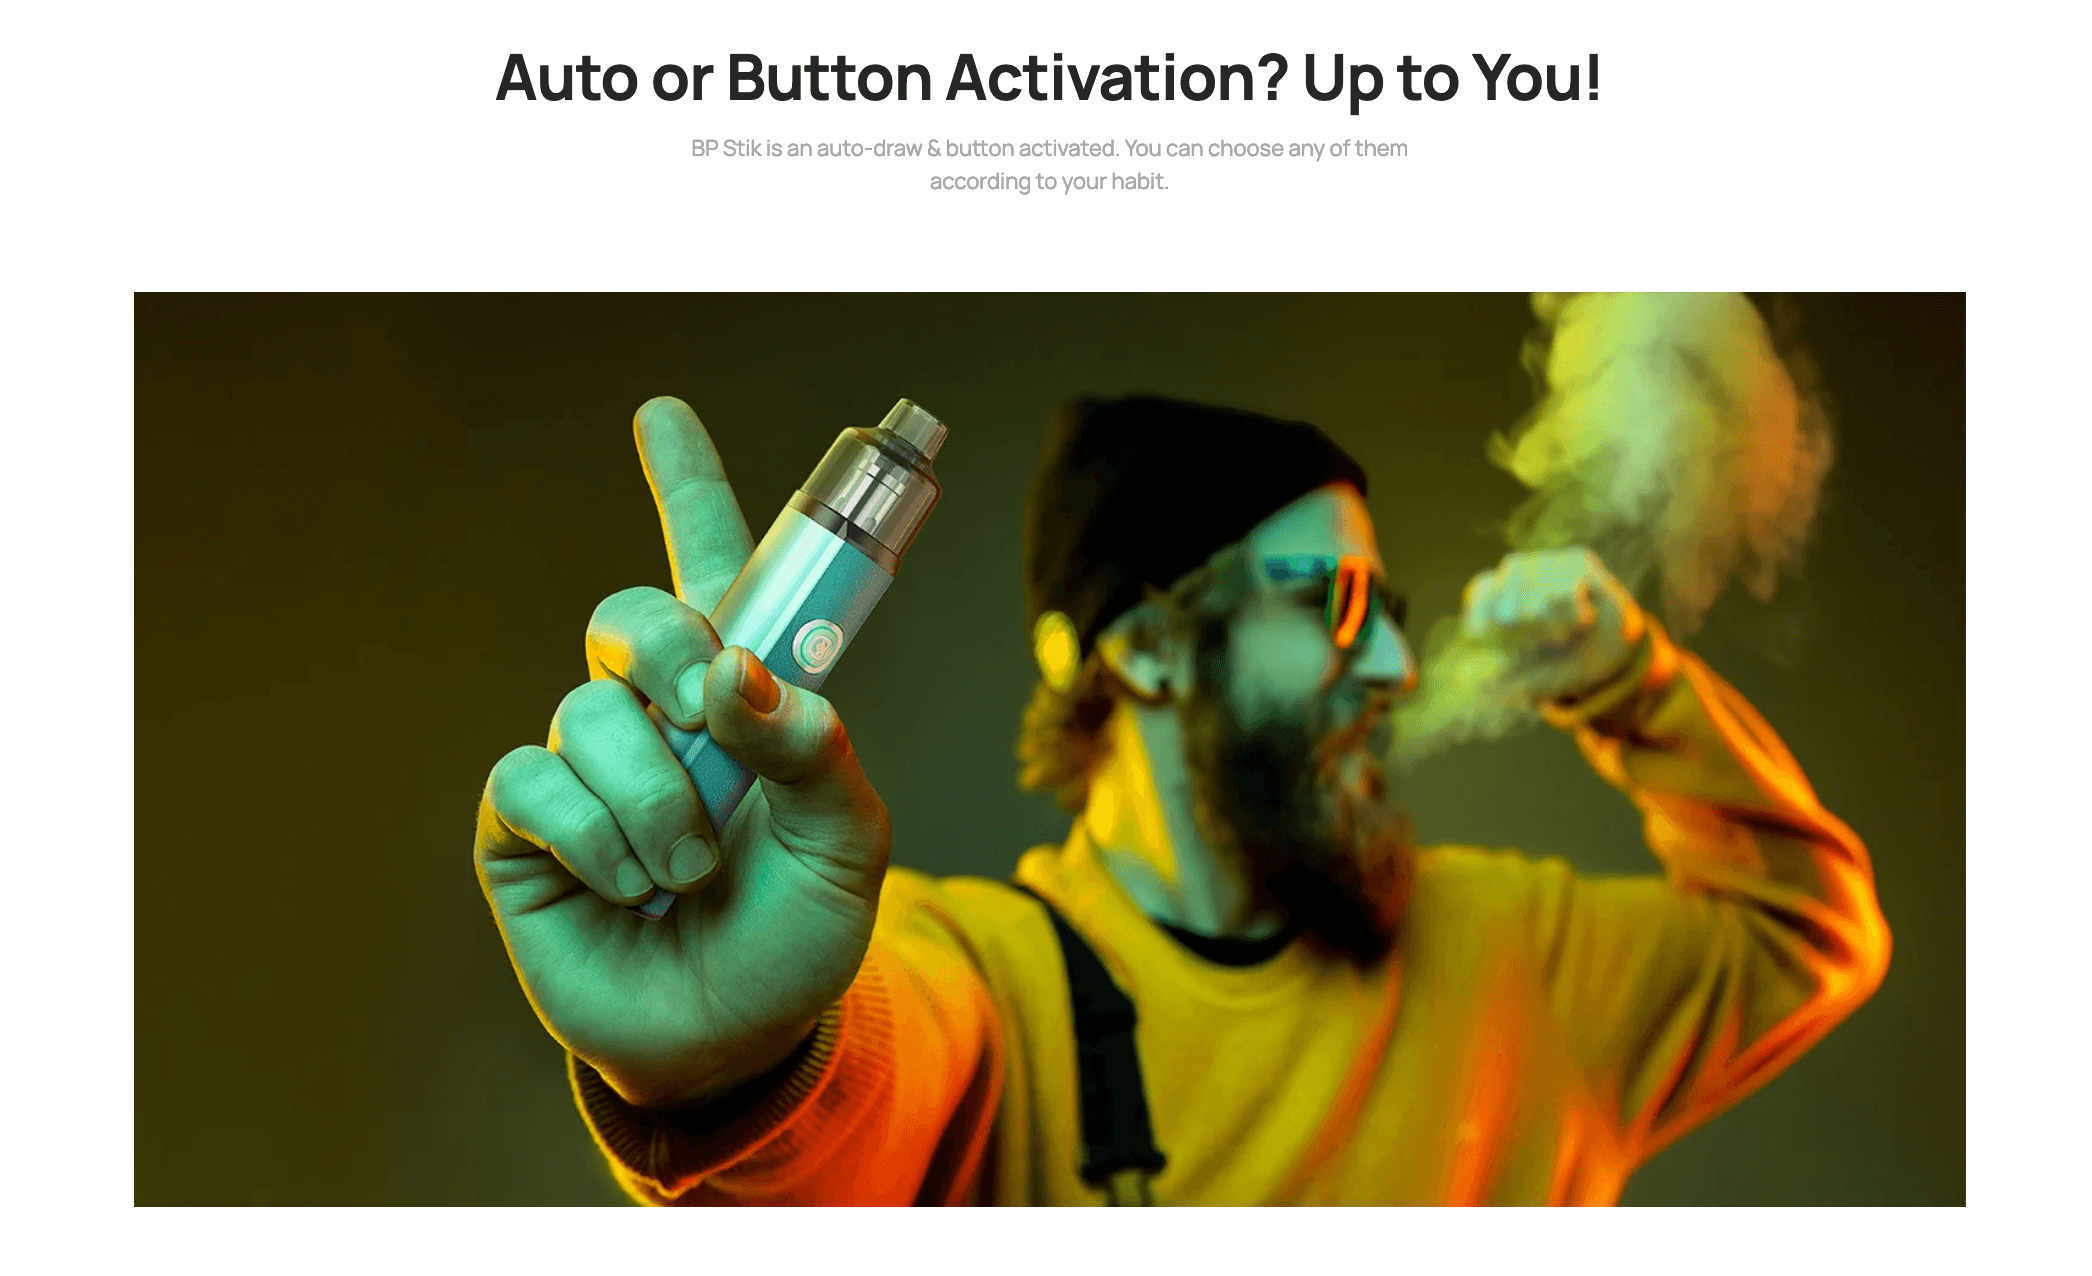 Aspire BP Stik | Auto or button activation